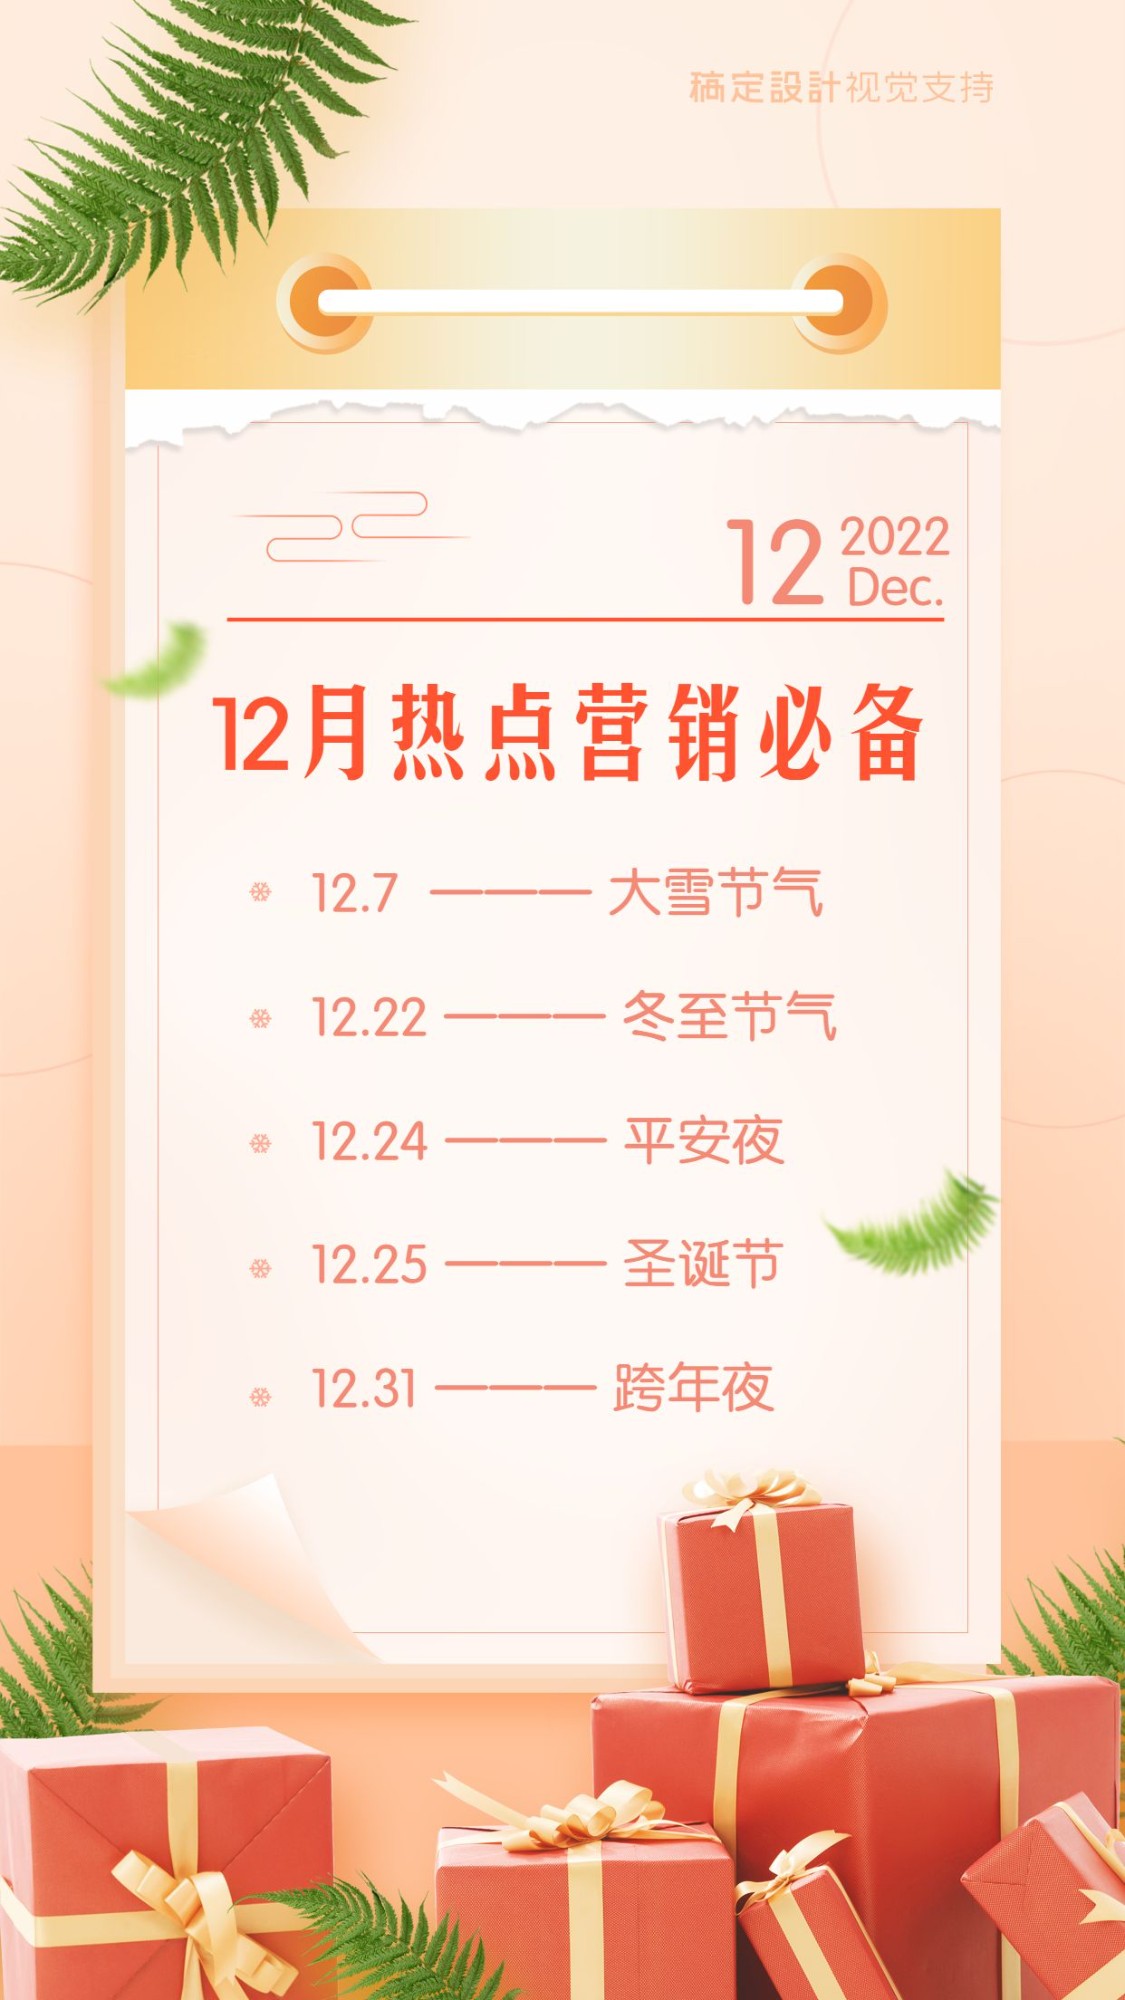 12月营销热点日历提醒通知预览效果